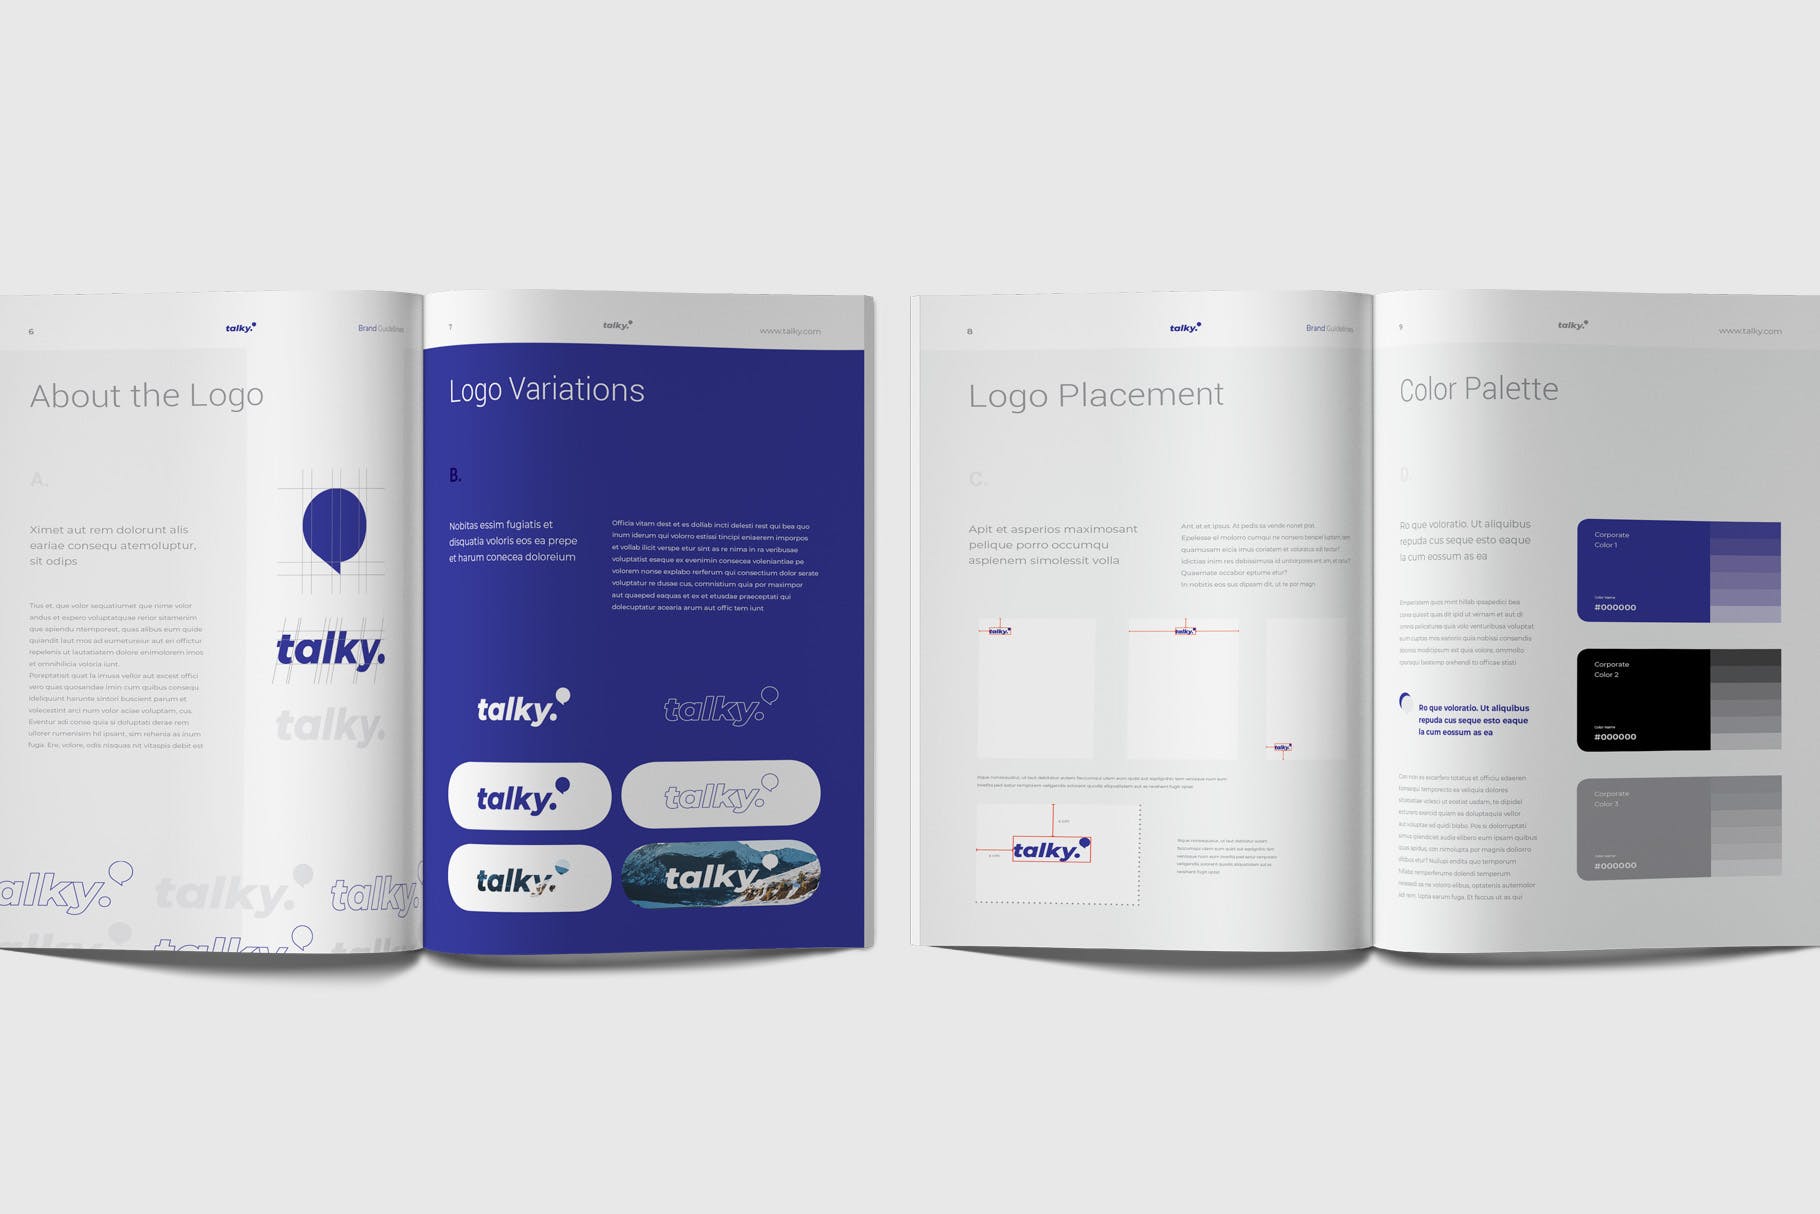 企业品牌识别系统模板素材下载Brand Guideline Rynkby